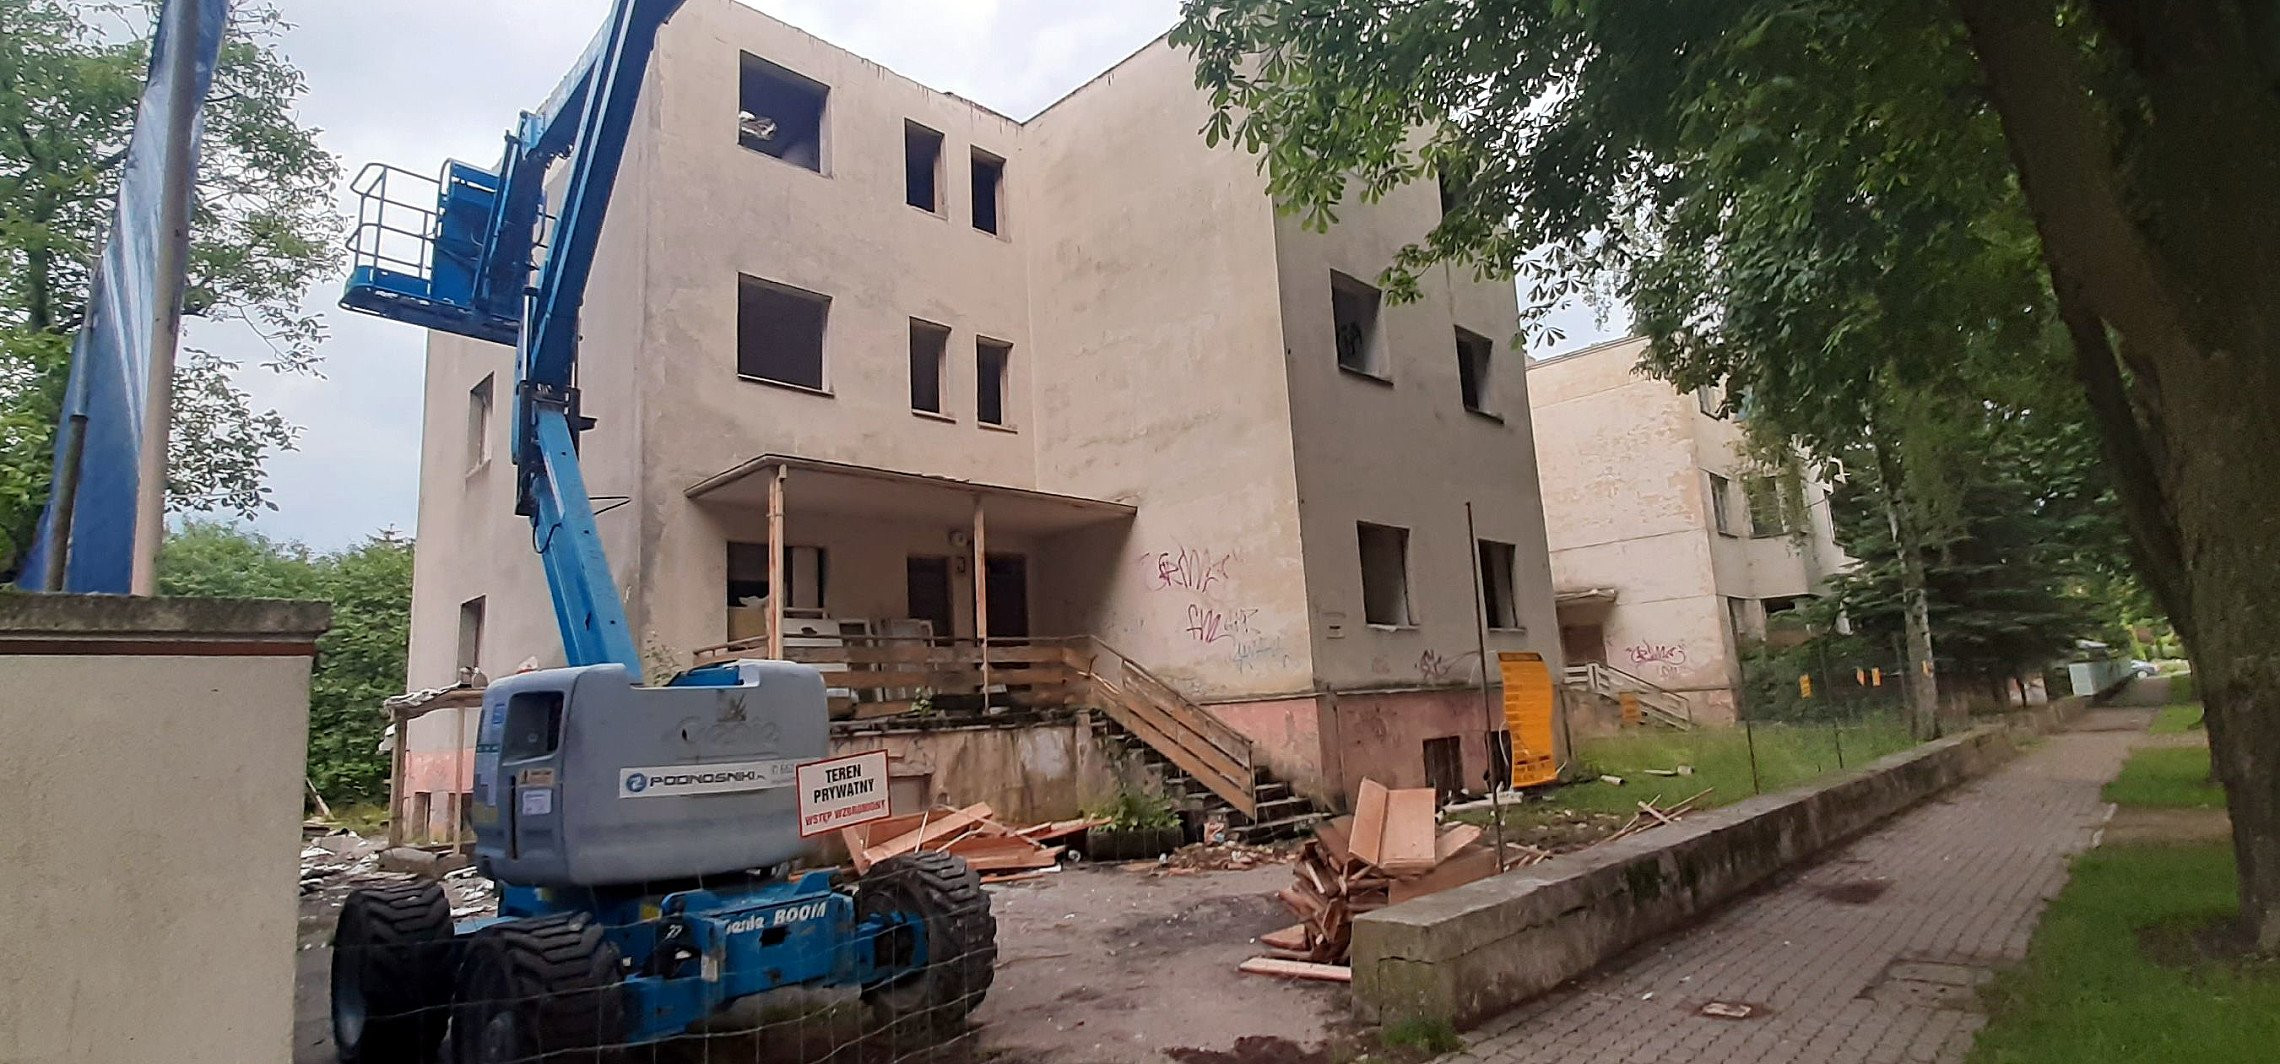 Inowrocław - Ruszyła rozbiórka części dawnego sanatorium